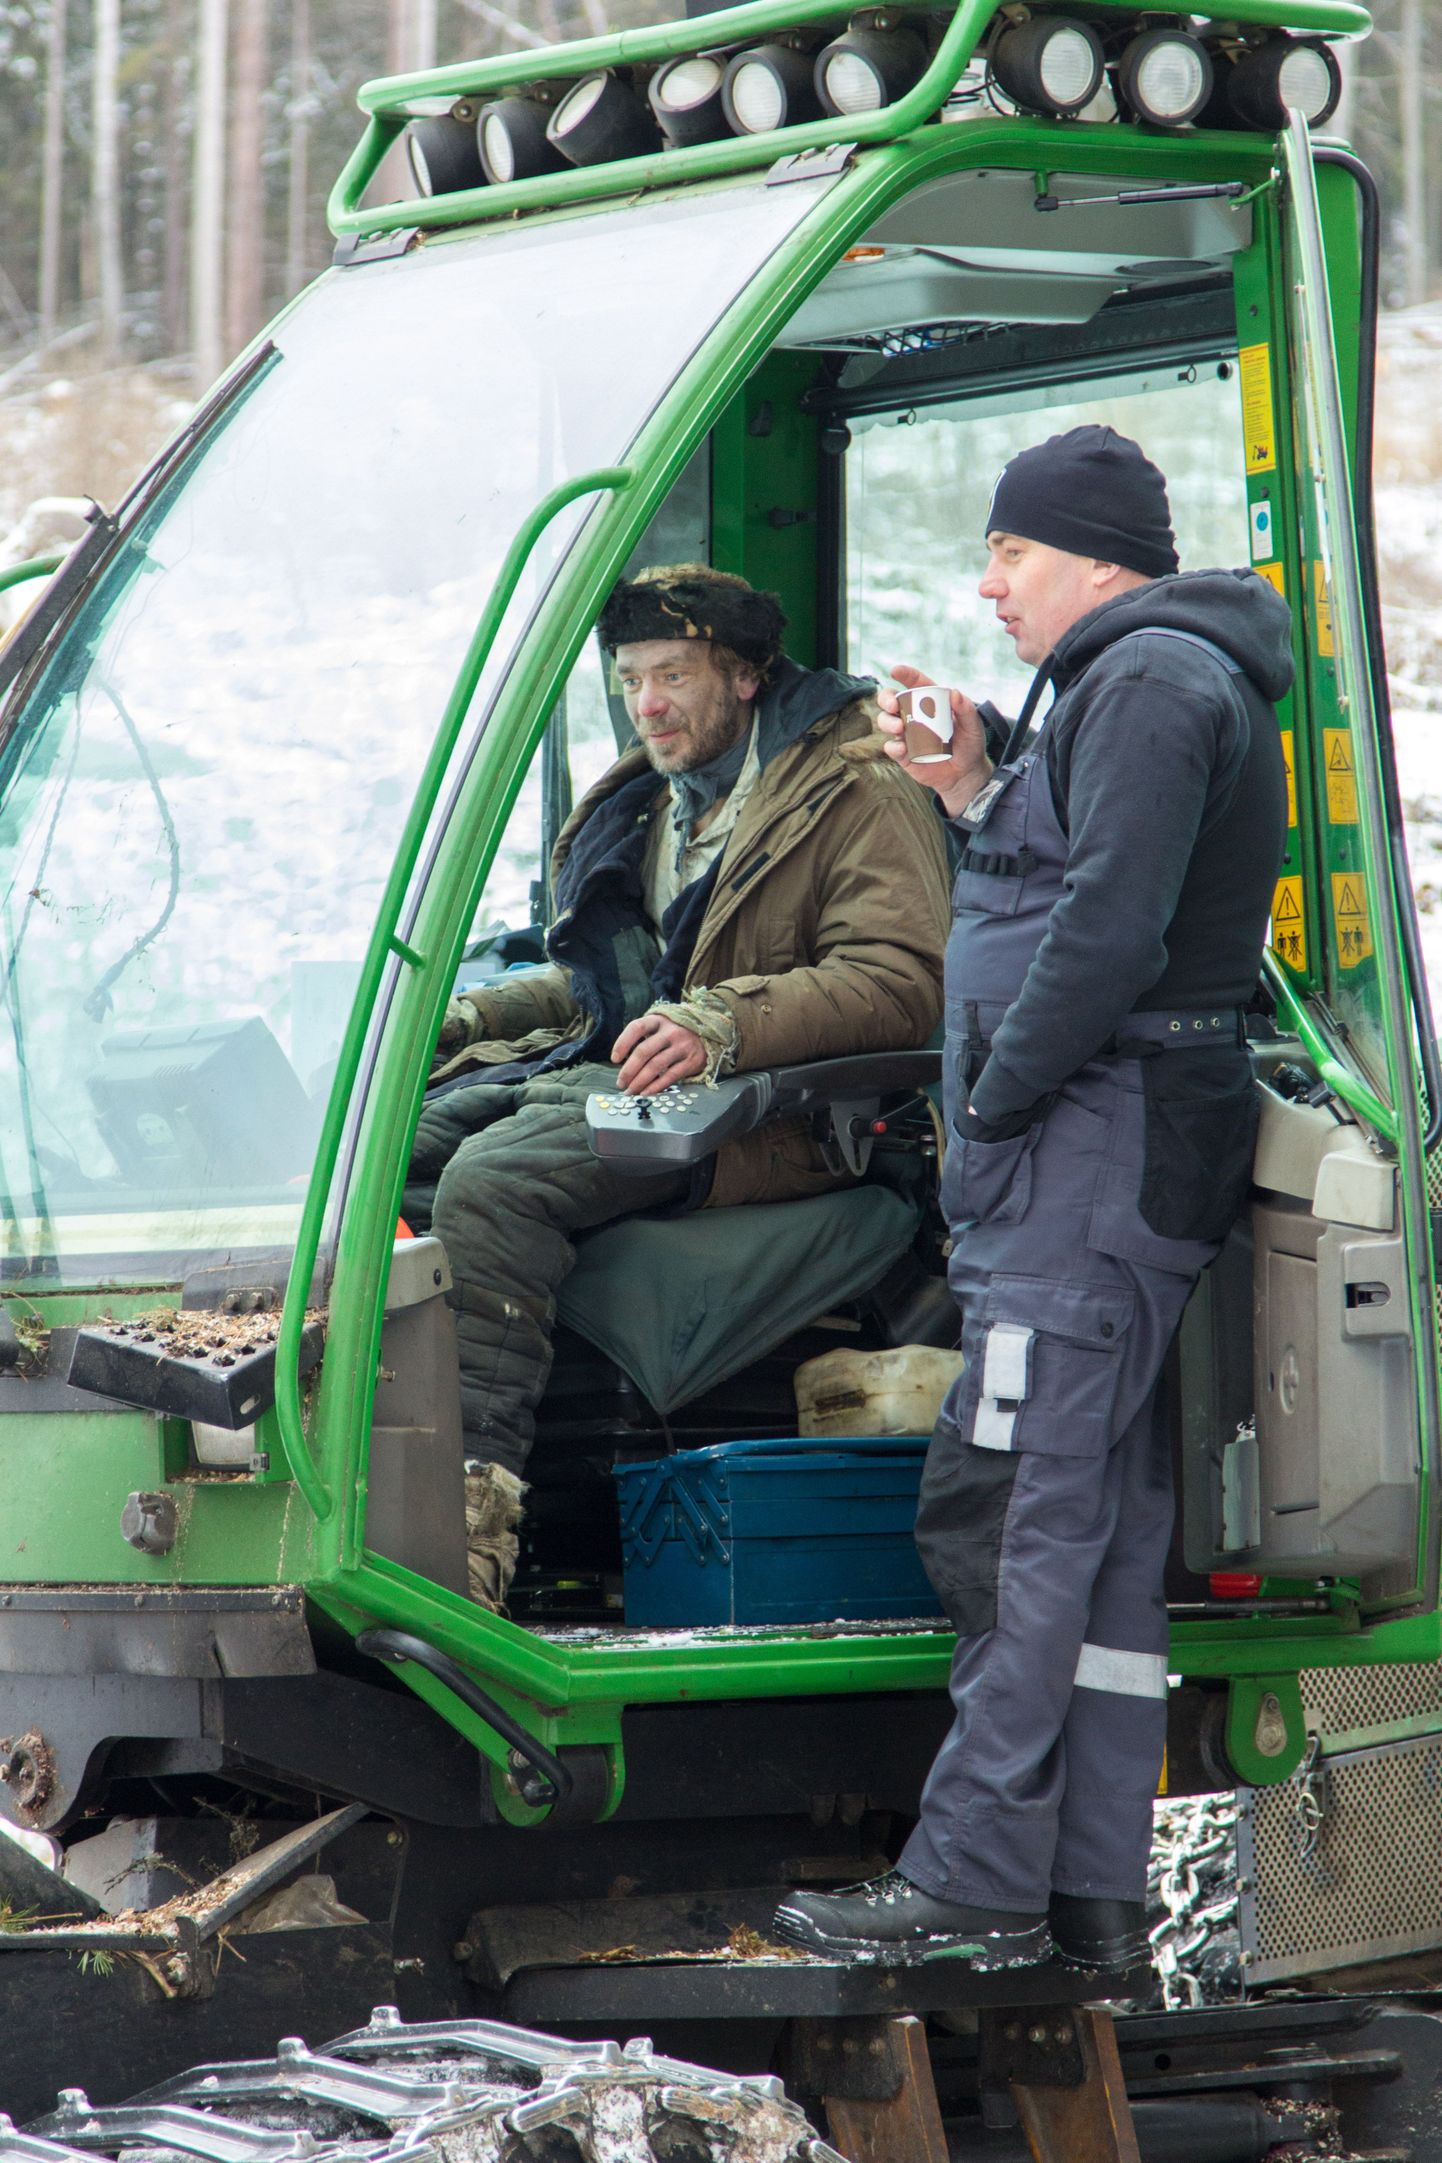 Pärast stseeni filmimist proovis Jaani kehastanud Meelis Rämmel, milline vaade avaneb harvesteri kabiinist. Harvesterijuht Maanole oli see aga esimene kord masinaga kaamerate ees toimetada.